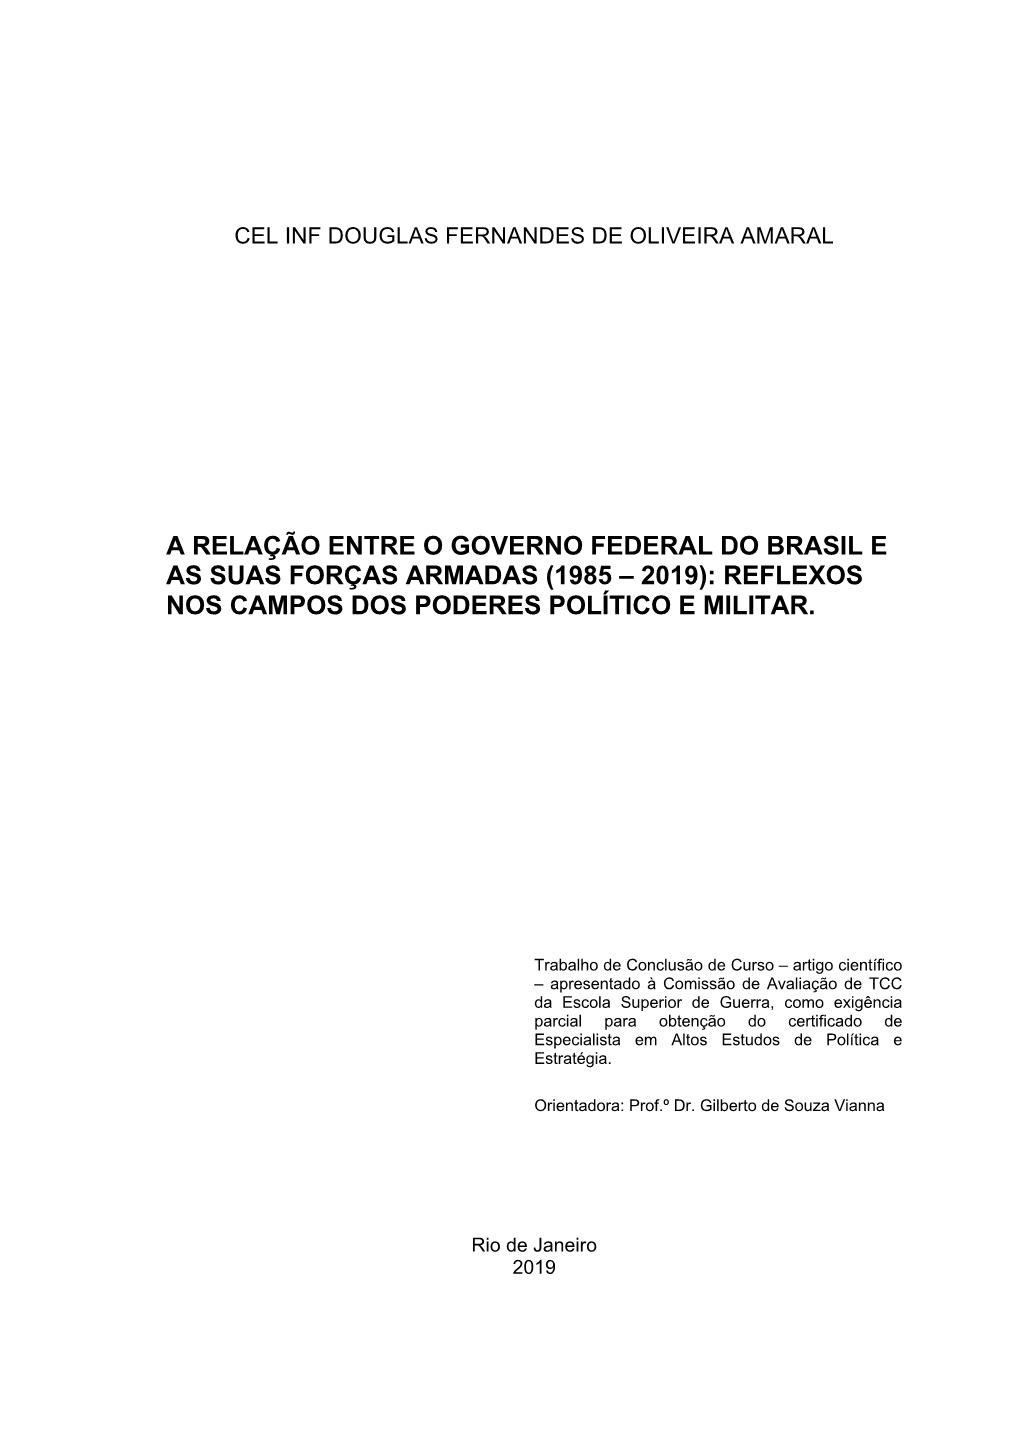 A Relação Entre O Governo Federal Do Brasil E As Suas Forças Armadas (1985 – 2019): Reflexos Nos Campos Dos Poderes Político E Militar